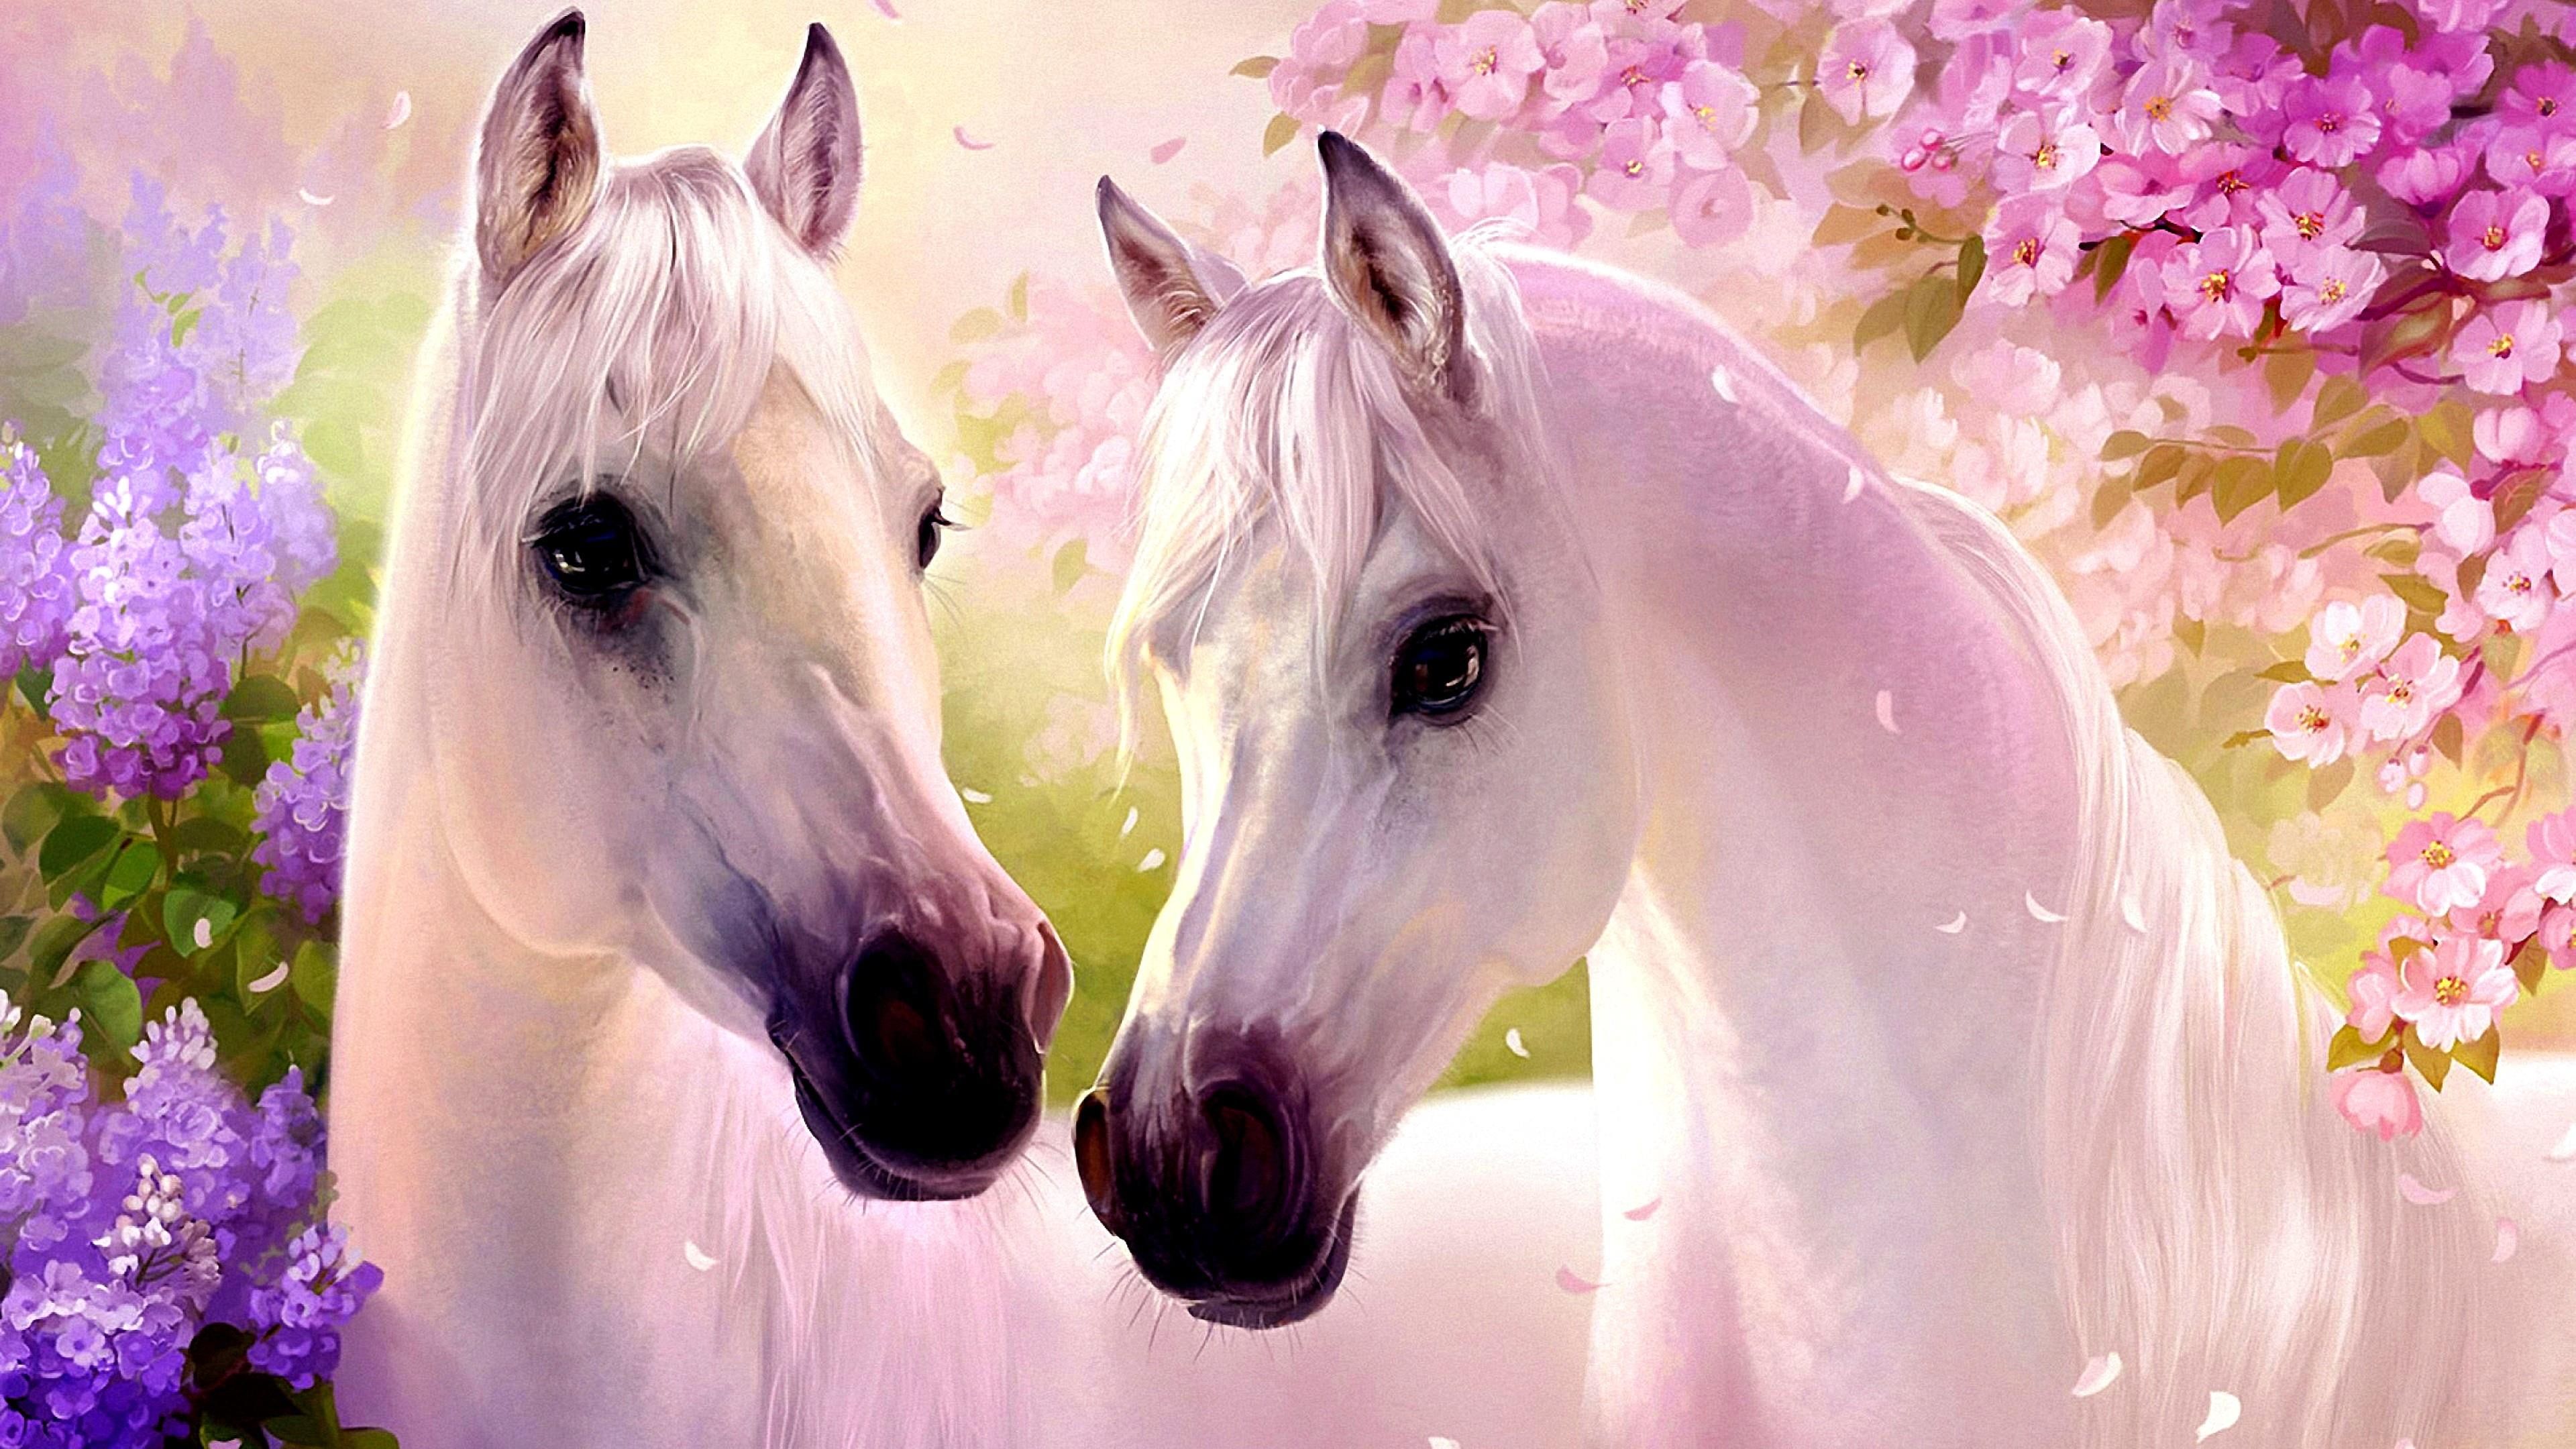 horses white horse flowering plant